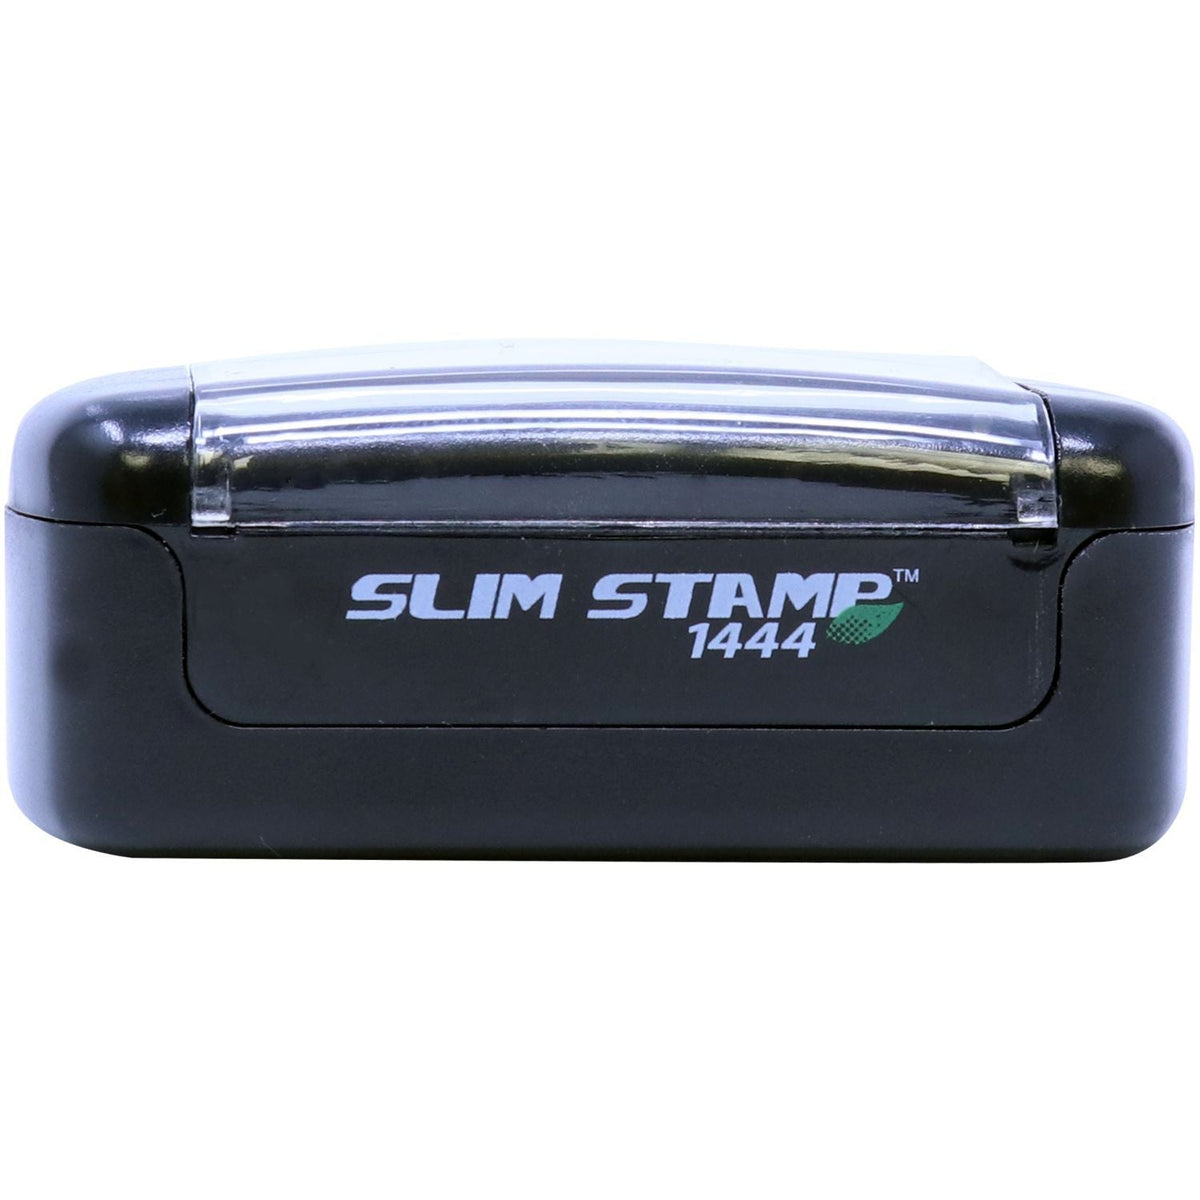 Slimstamp Custom Stamp 1444 Front